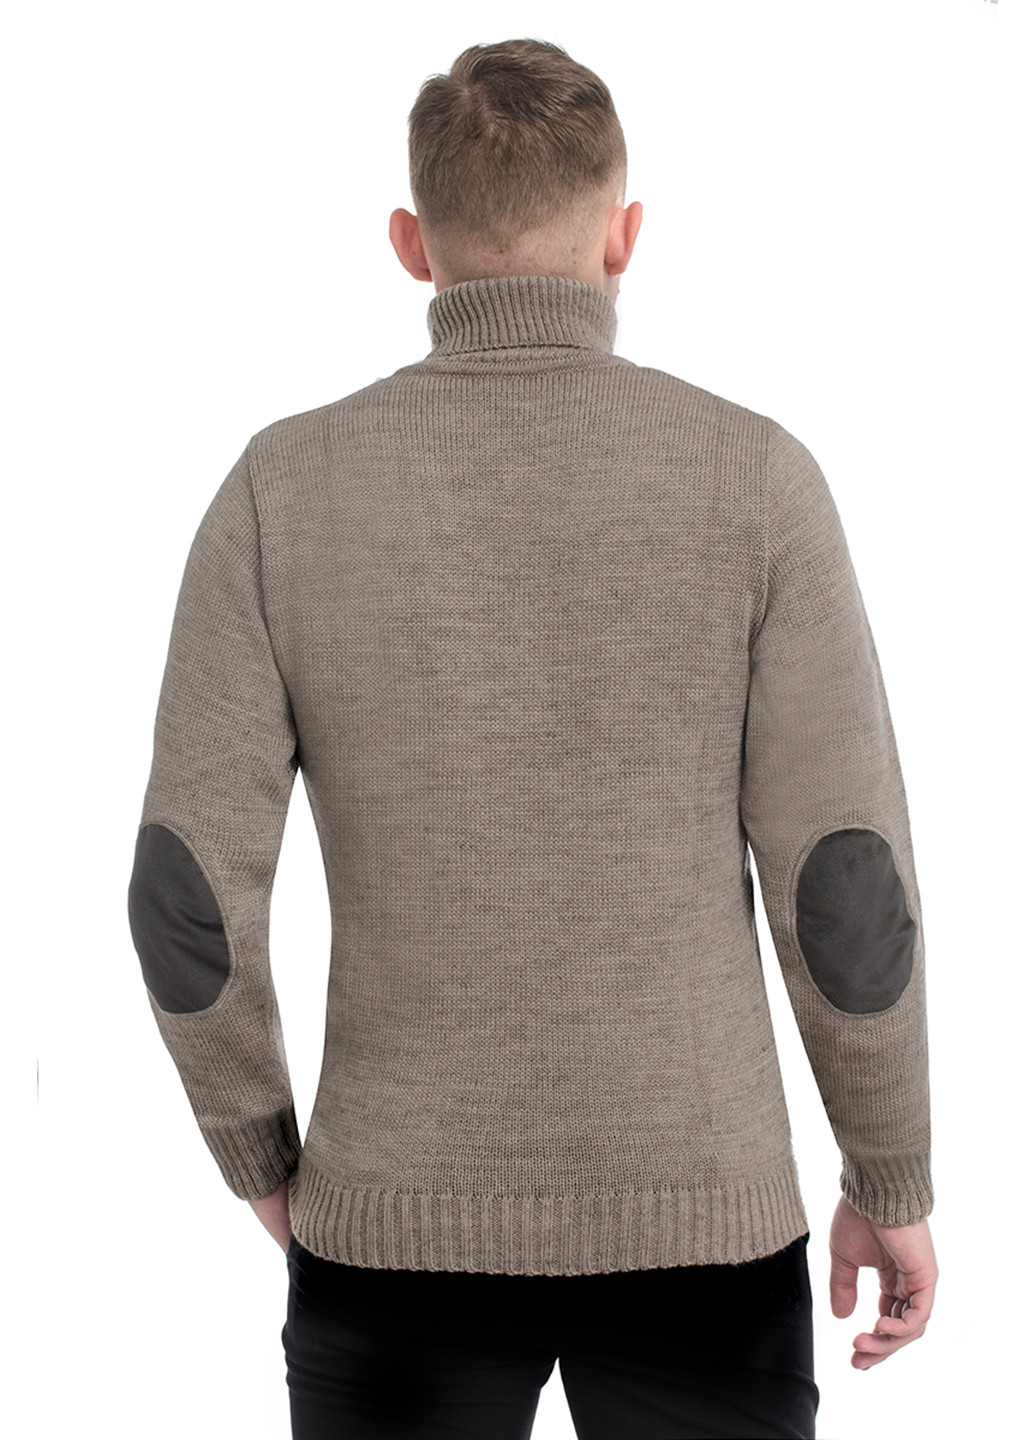 Серо-коричневый демисезонный свитер SVTR